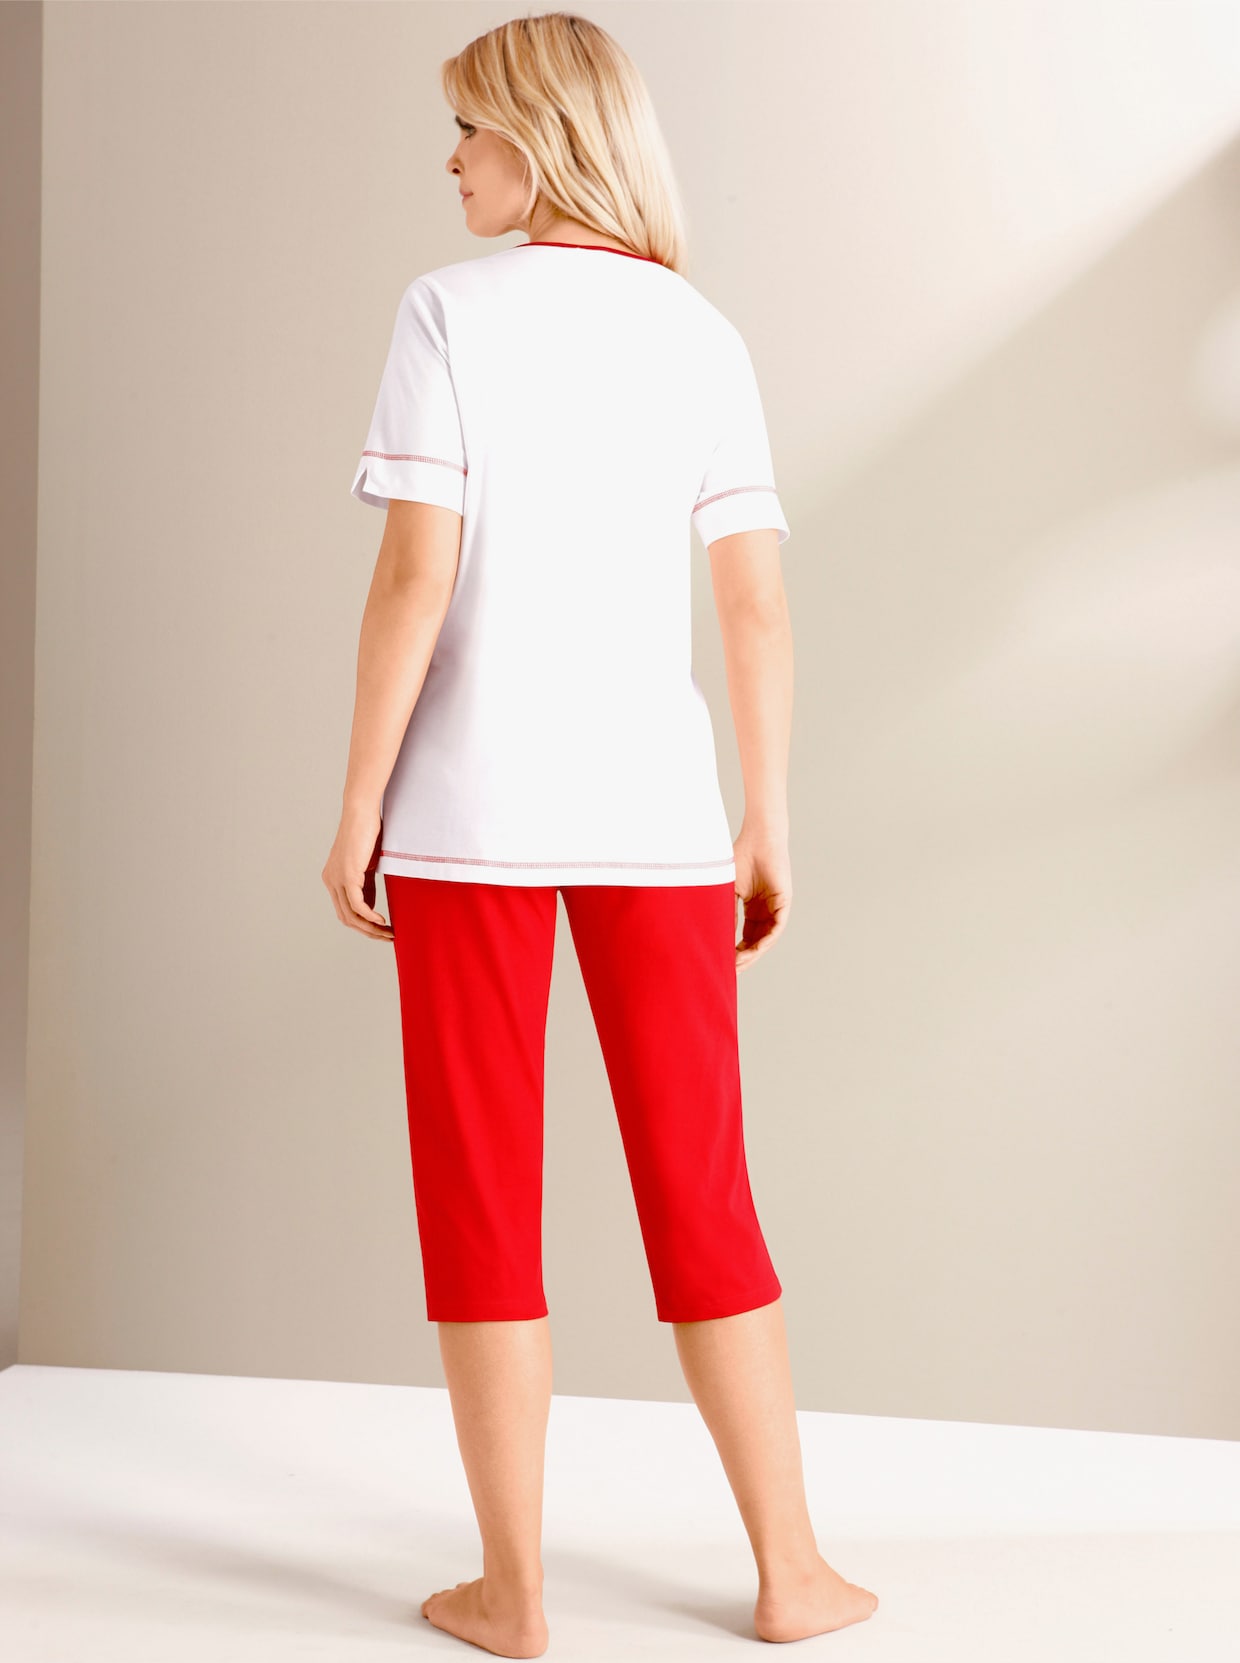 Capri pyžamo - červená-bílá-potisk